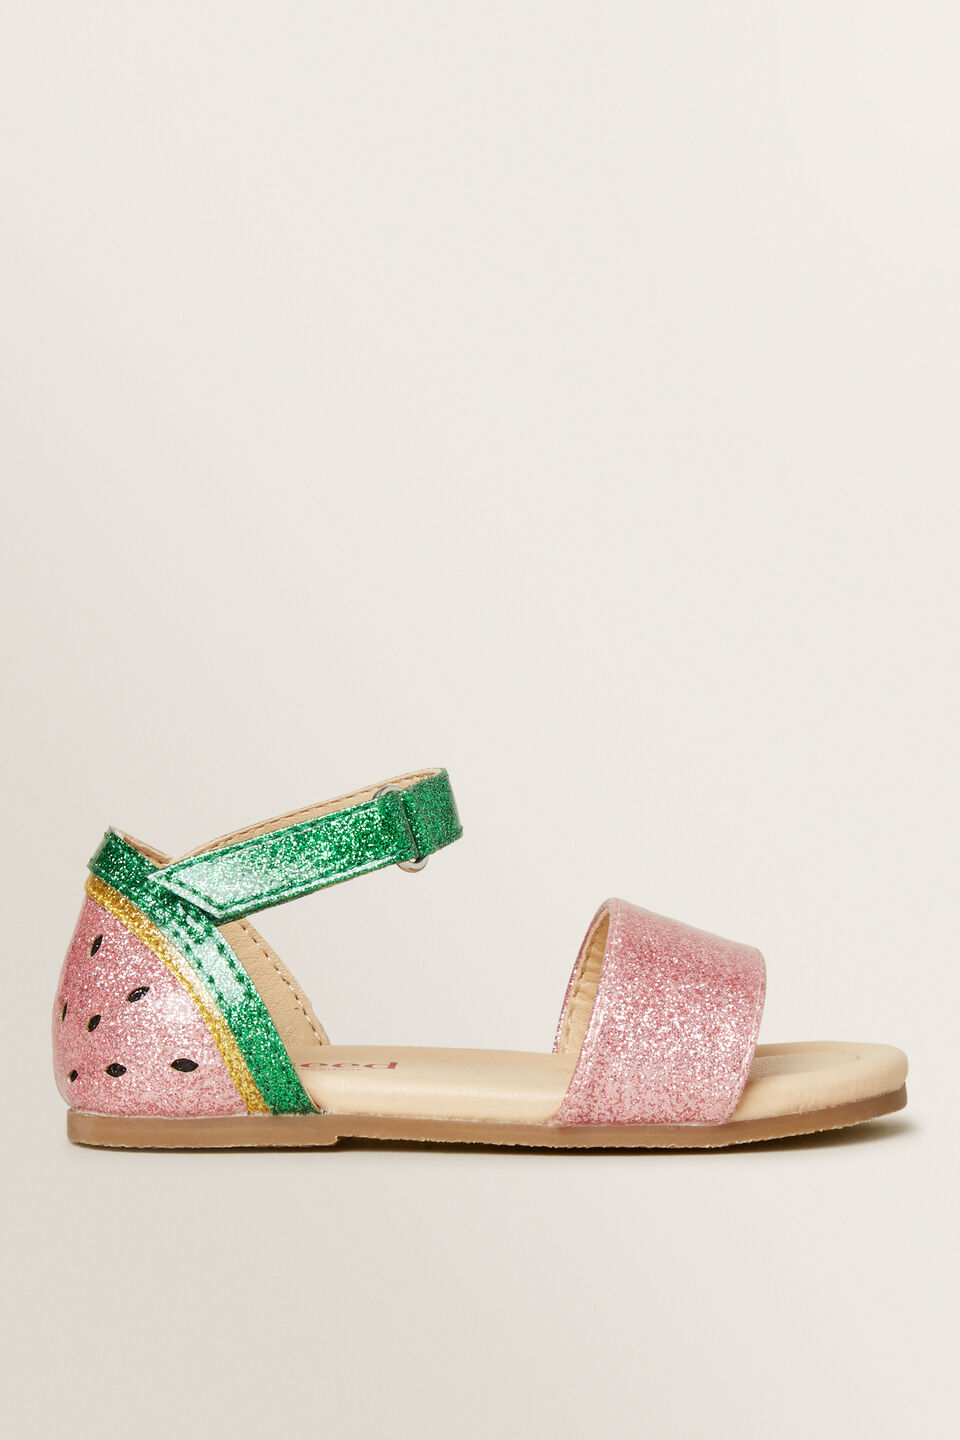 Watermelon Sandal  